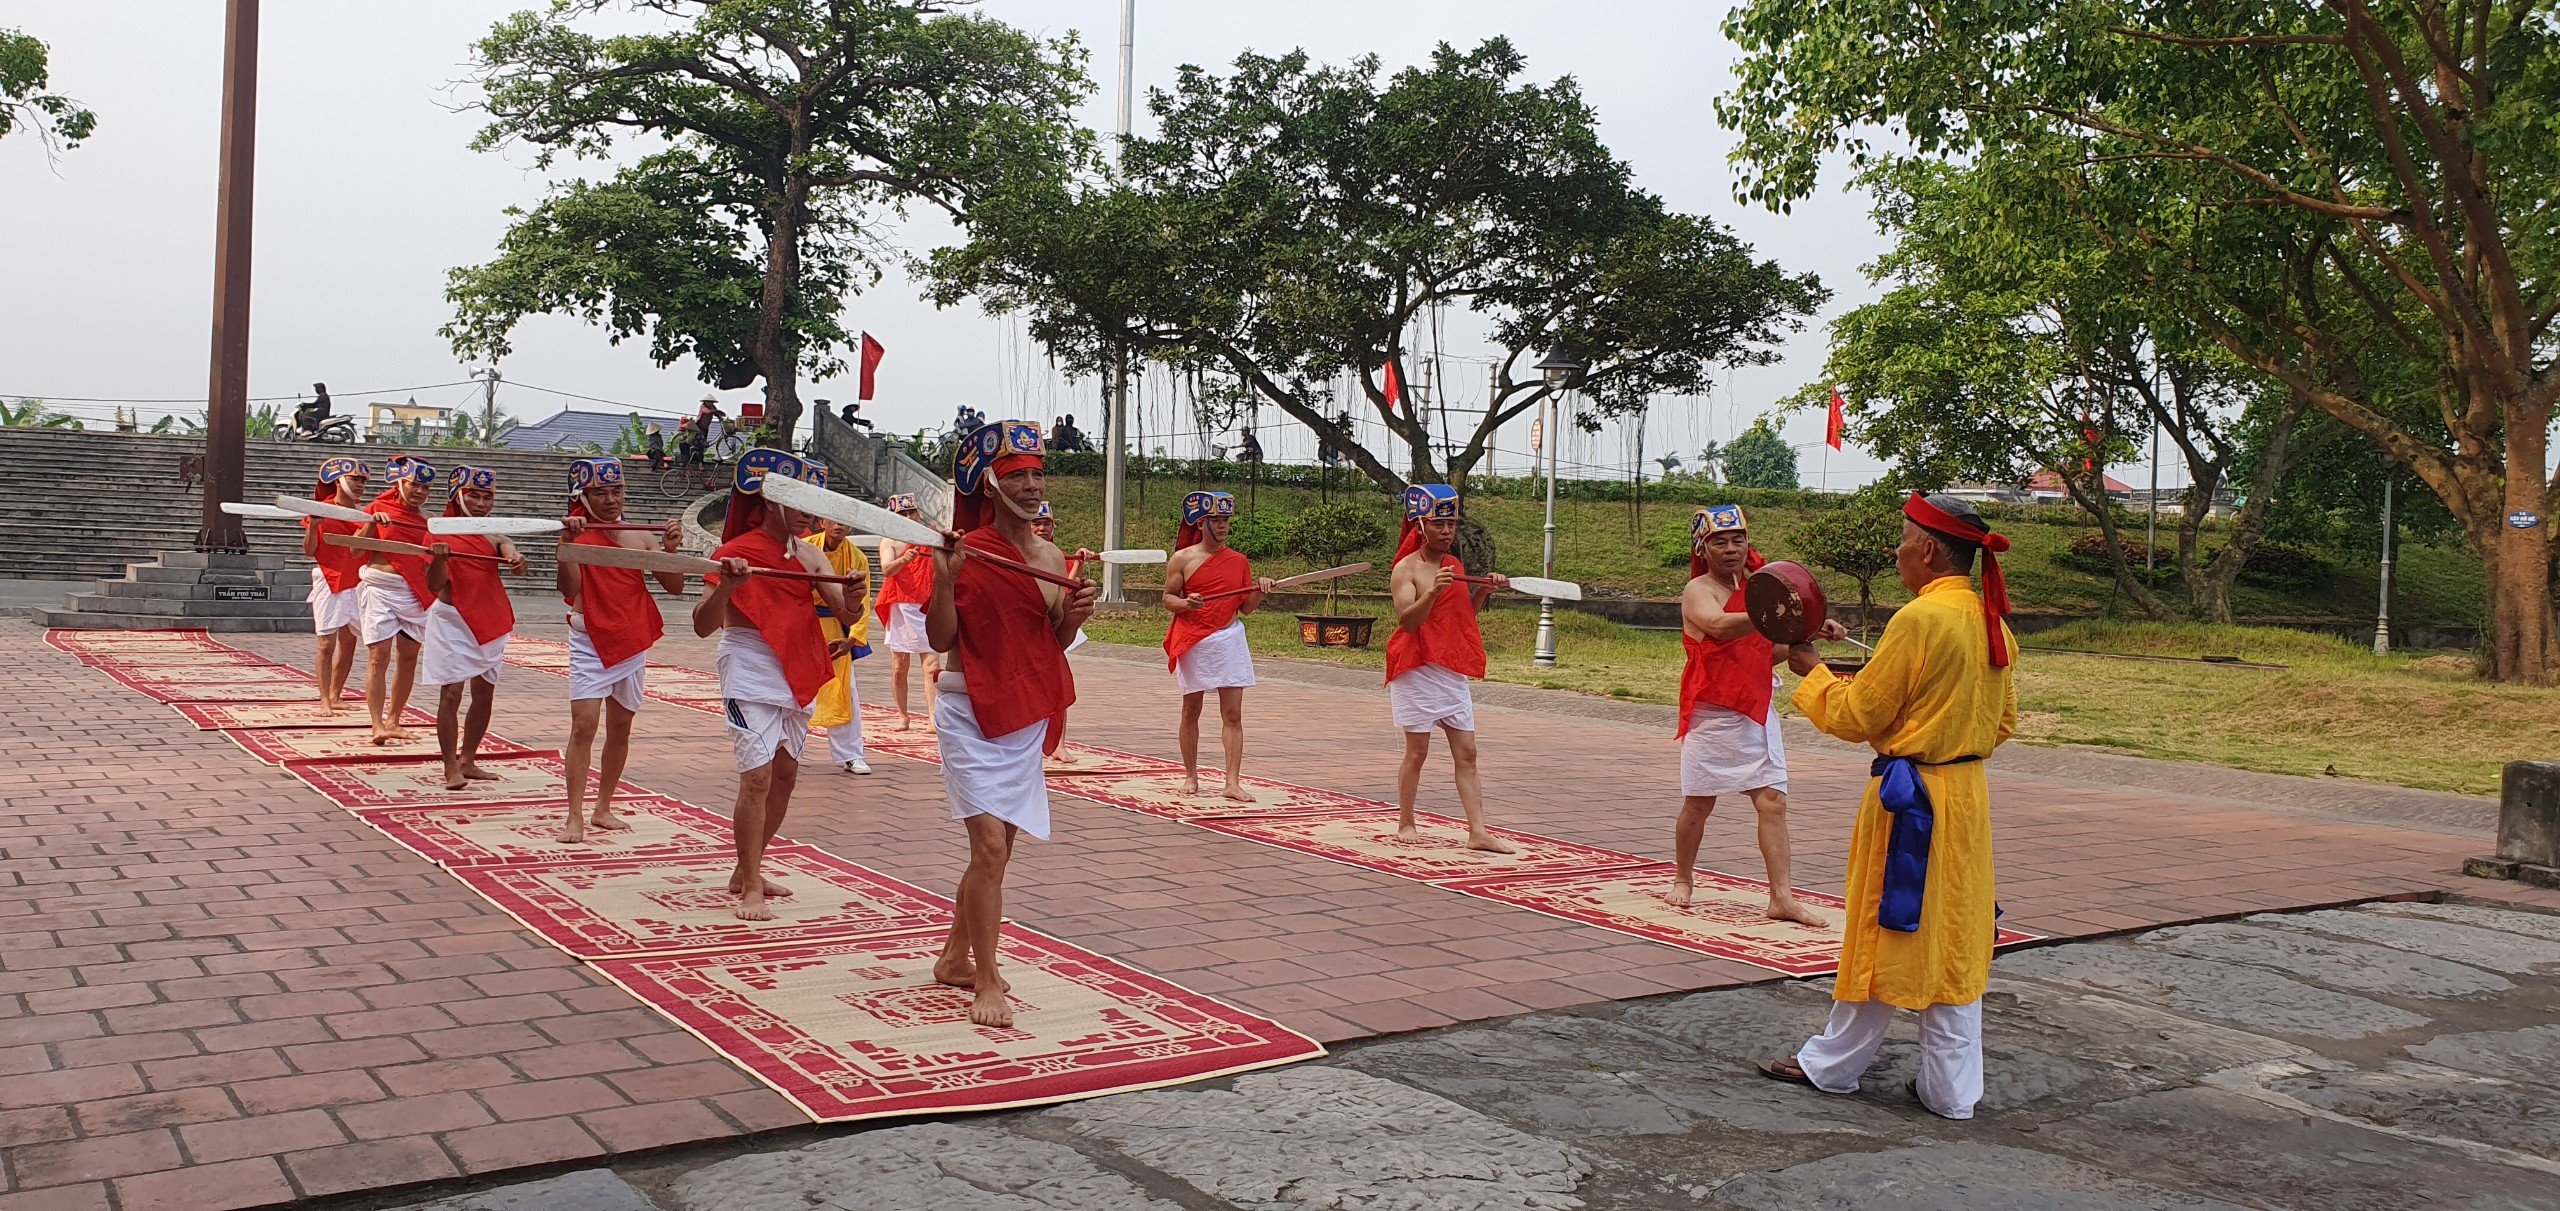 Thái Bình: Nhiều hoạt động đặc sắc tại Chùa Keo dịp lễ 30/4 - 1/5- Ảnh 5.